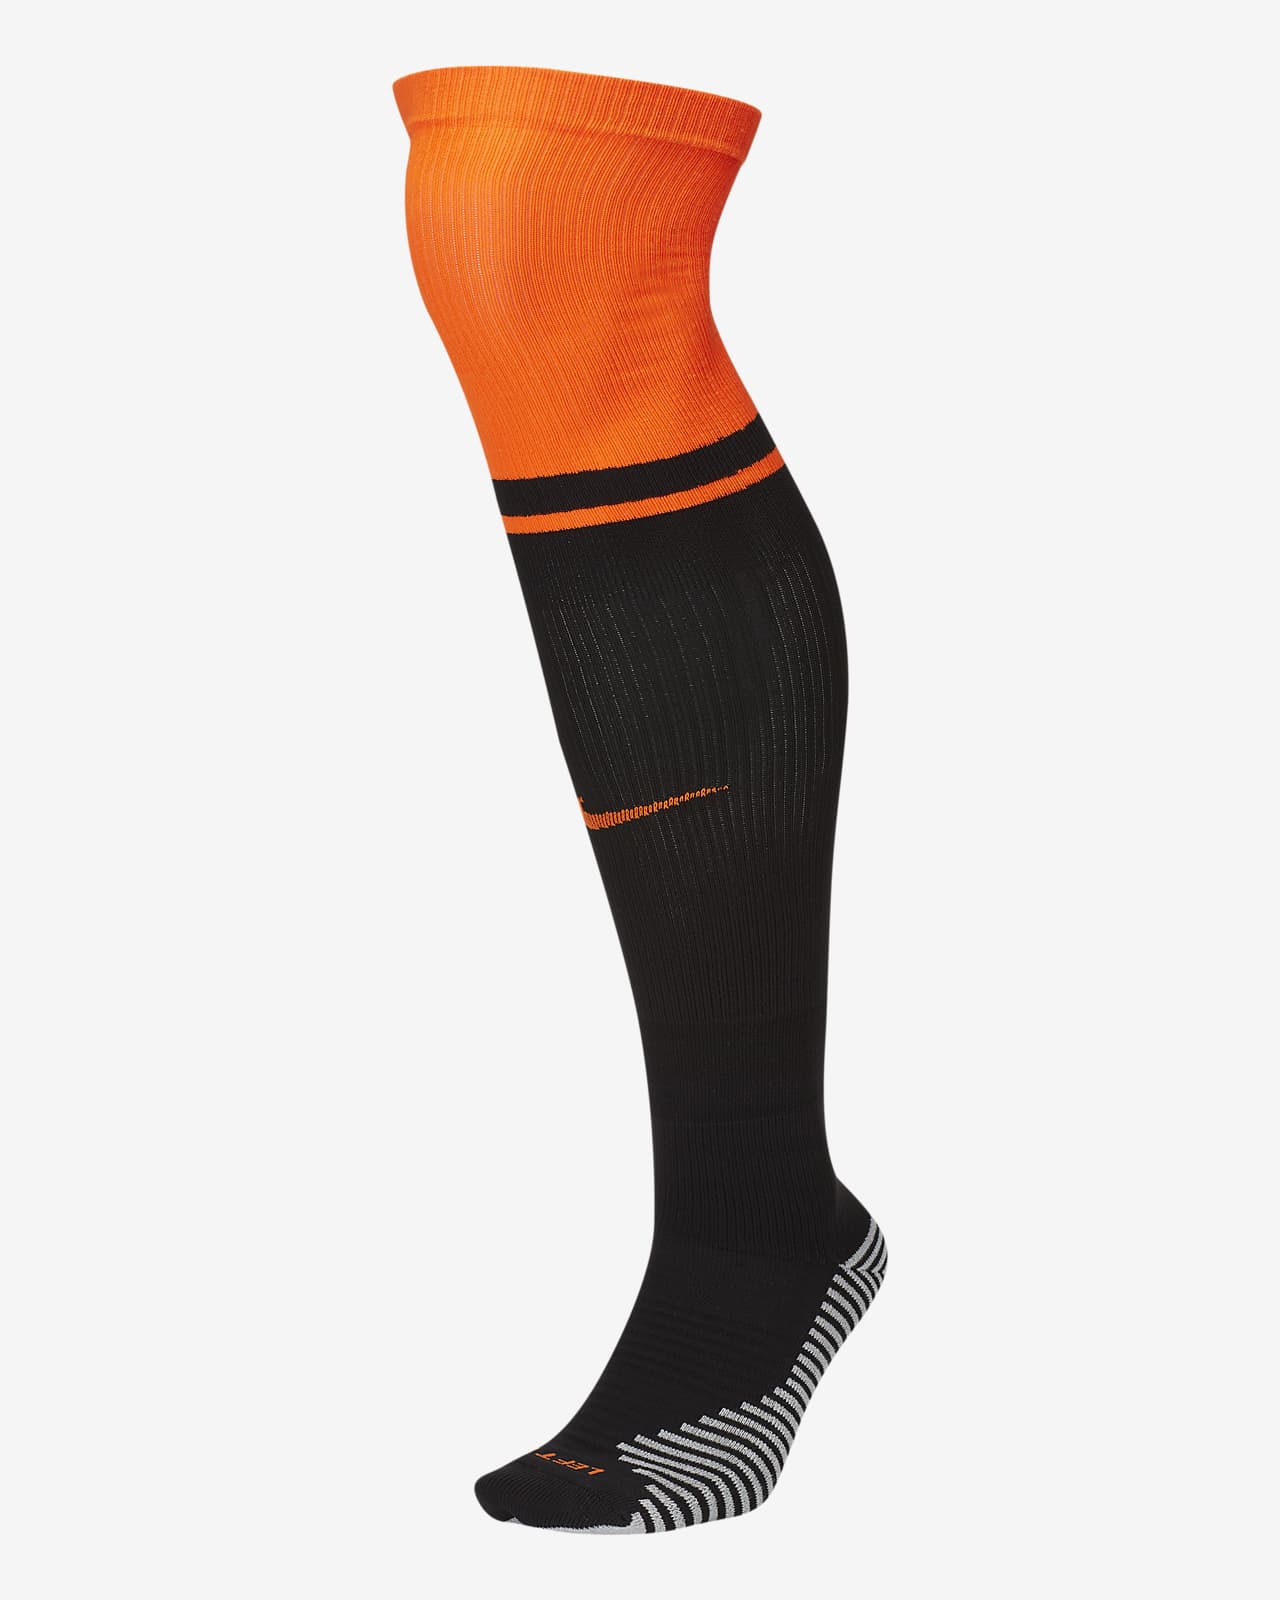 Away Over-the-Calf Football Socks. Nike SA